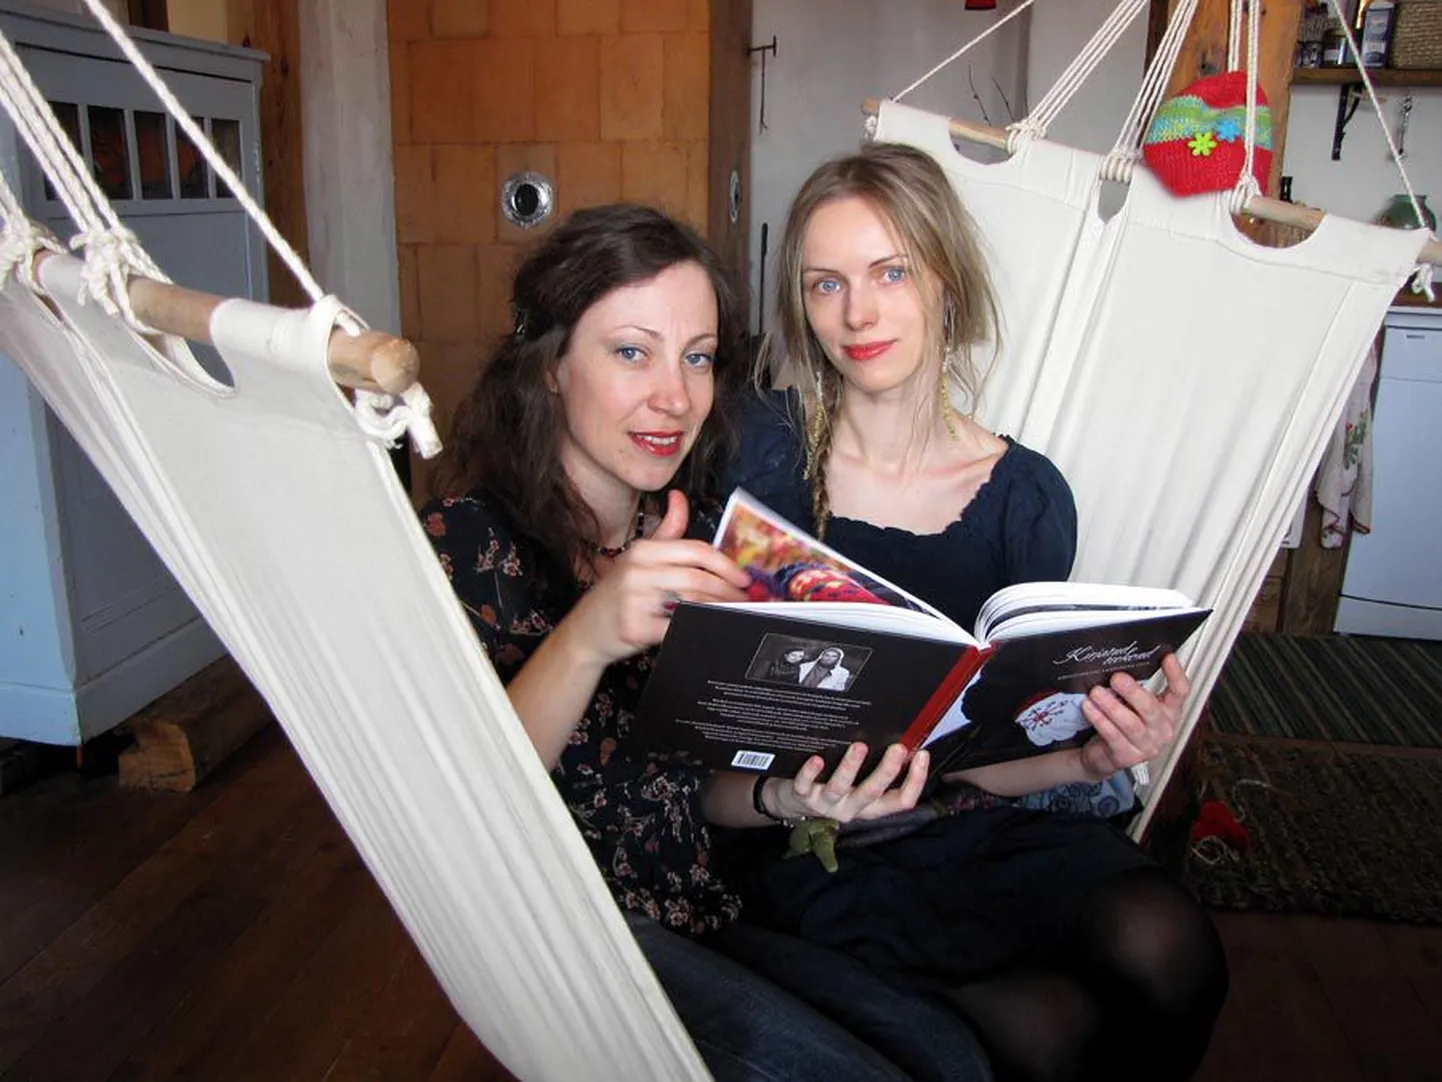 Käsitöömeister Kristi Jõeste (vasakul) ja kirjanik Kristiina Ehin ühendasid oma oskused ja lõid koos raamatu «Kirjatud teekond».